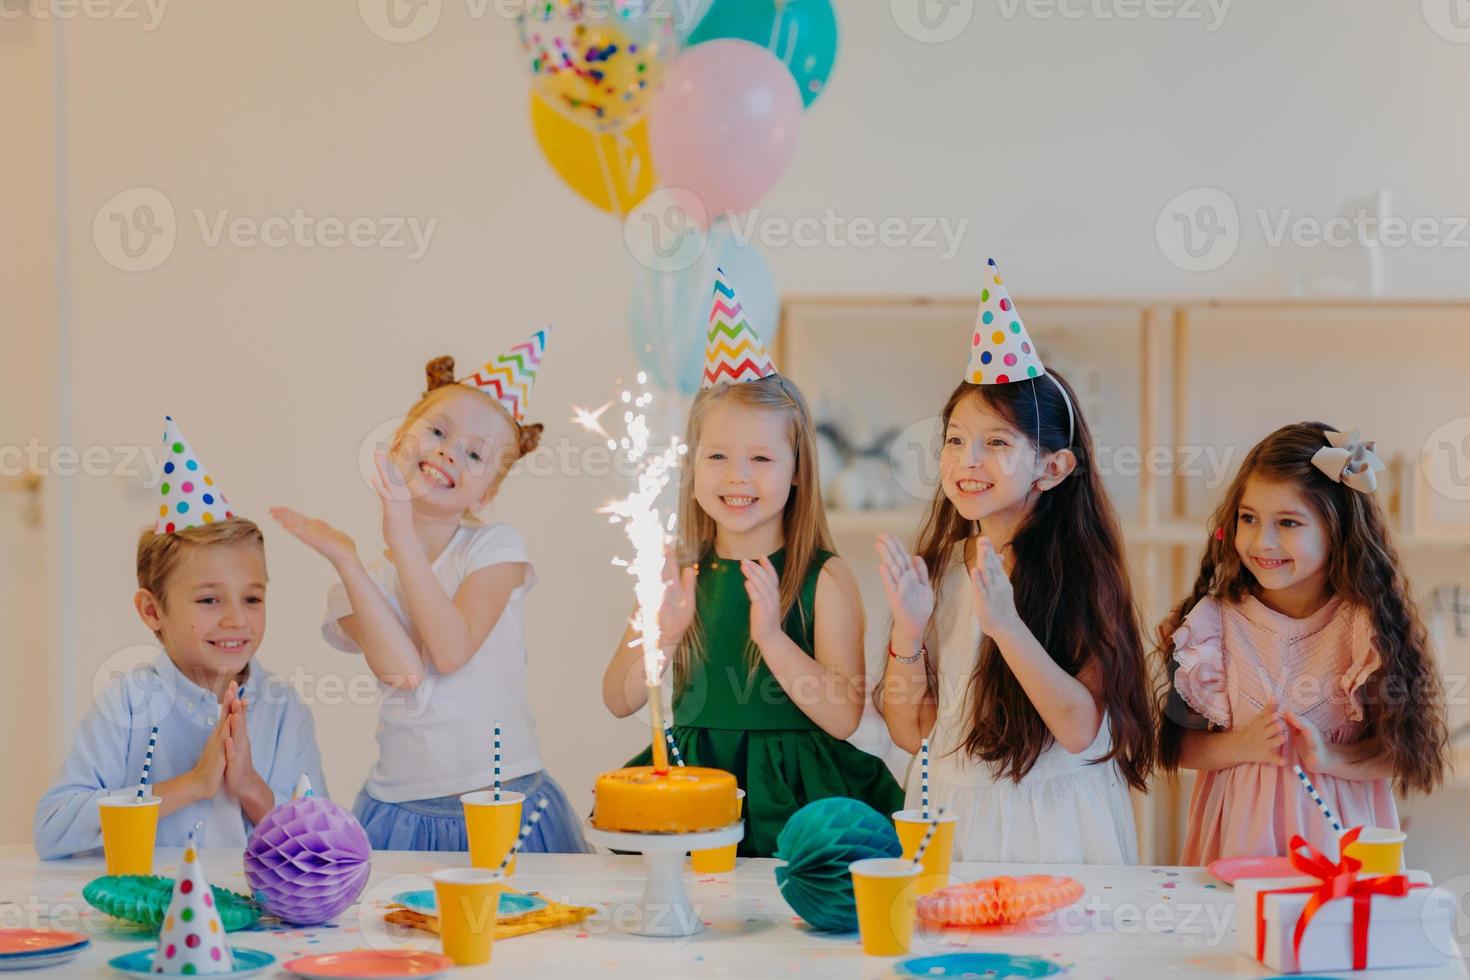 bambini e concetto di vacanza. felice che cinque amici guardino con gioia sulla torta con scintillio, festeggiano il compleanno, indossano cappelli a cono da festa e tengono palloncini ad aria, hanno espressioni felici foto